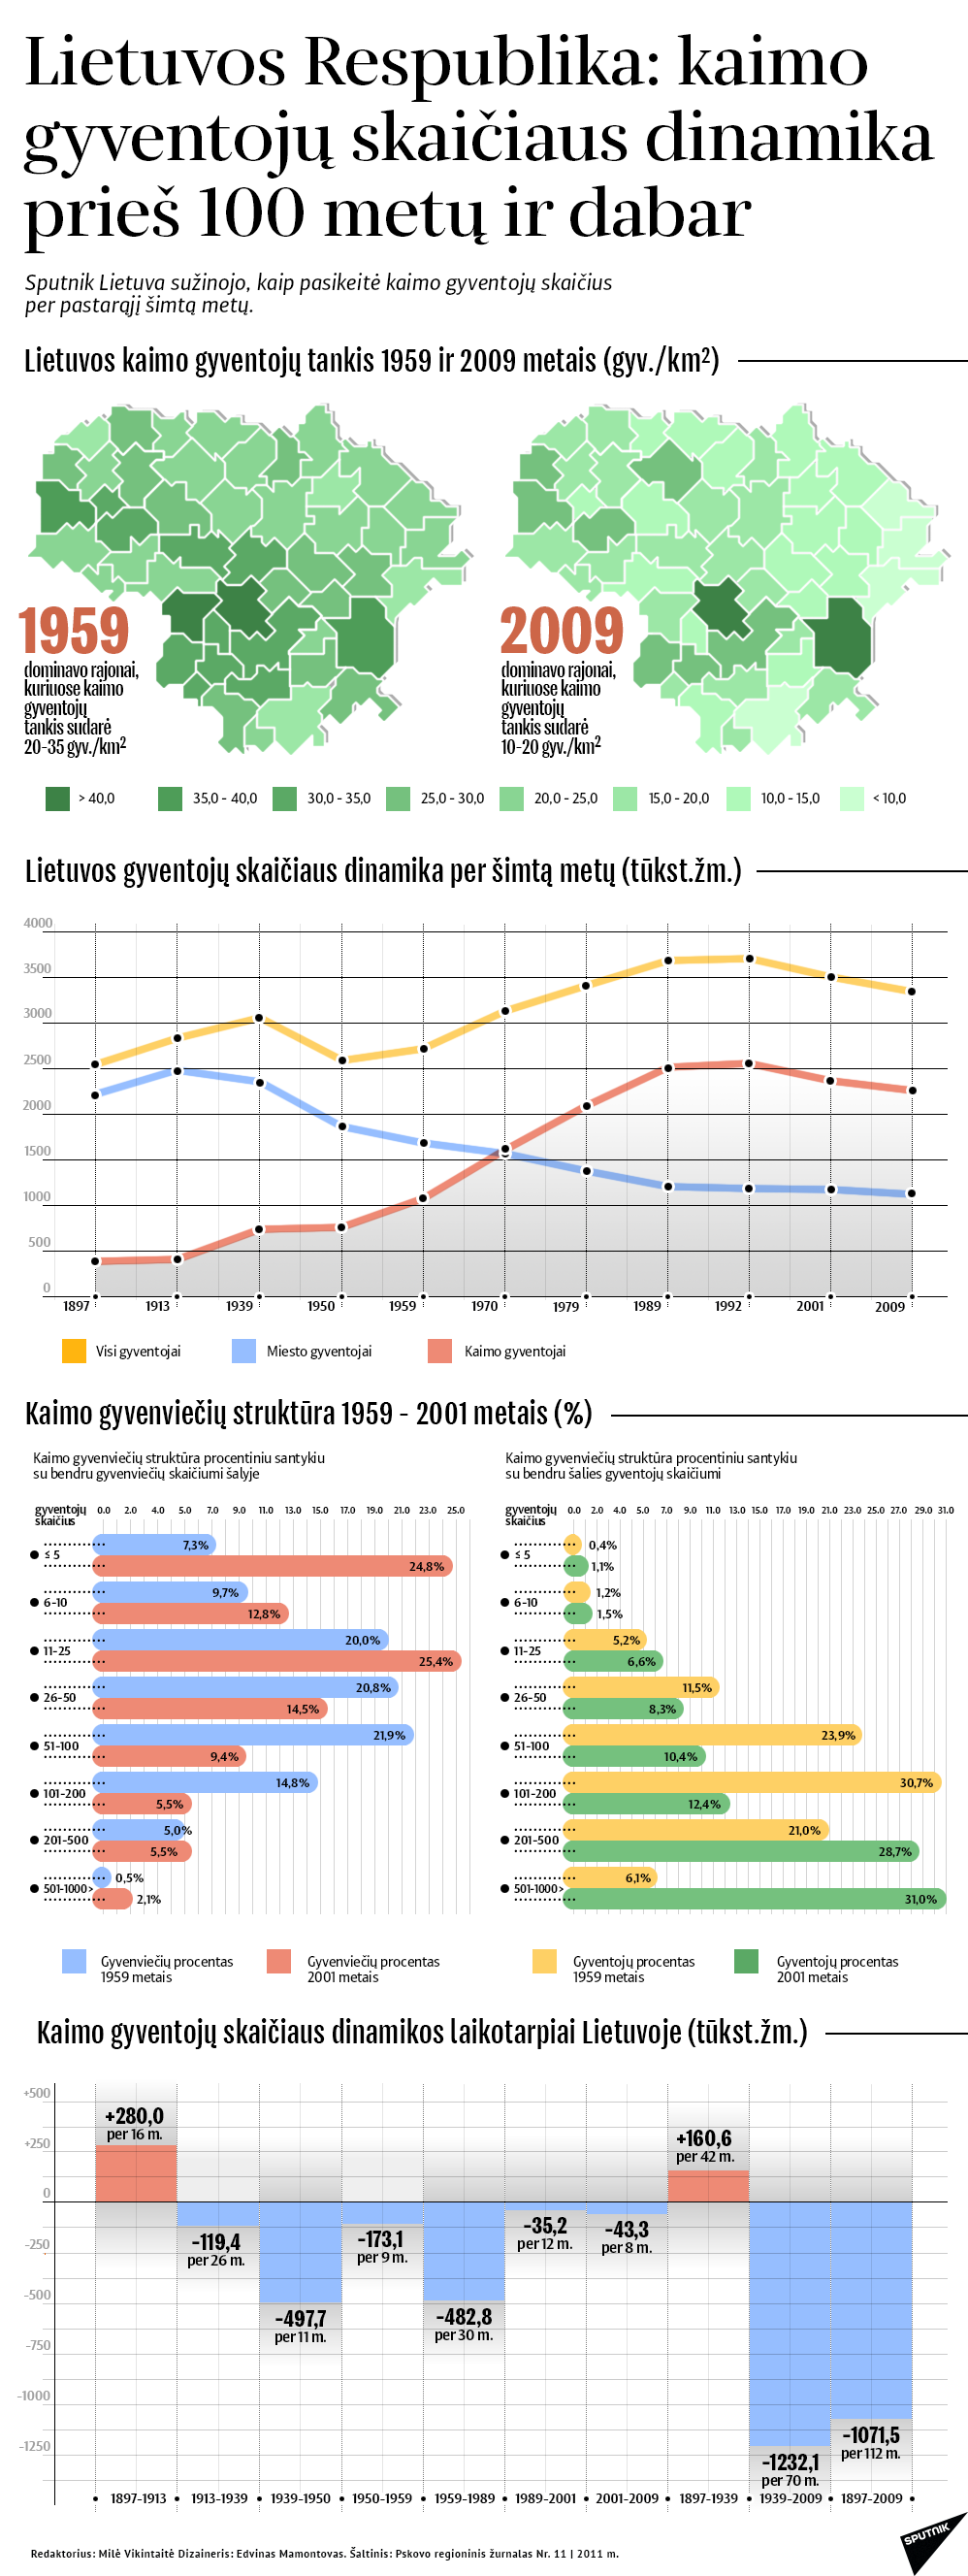 Lietuvos Respublika: kaimo gyventojų skaičiaus dinamika prieš šimtą metų ir dabar - Sputnik Lietuva